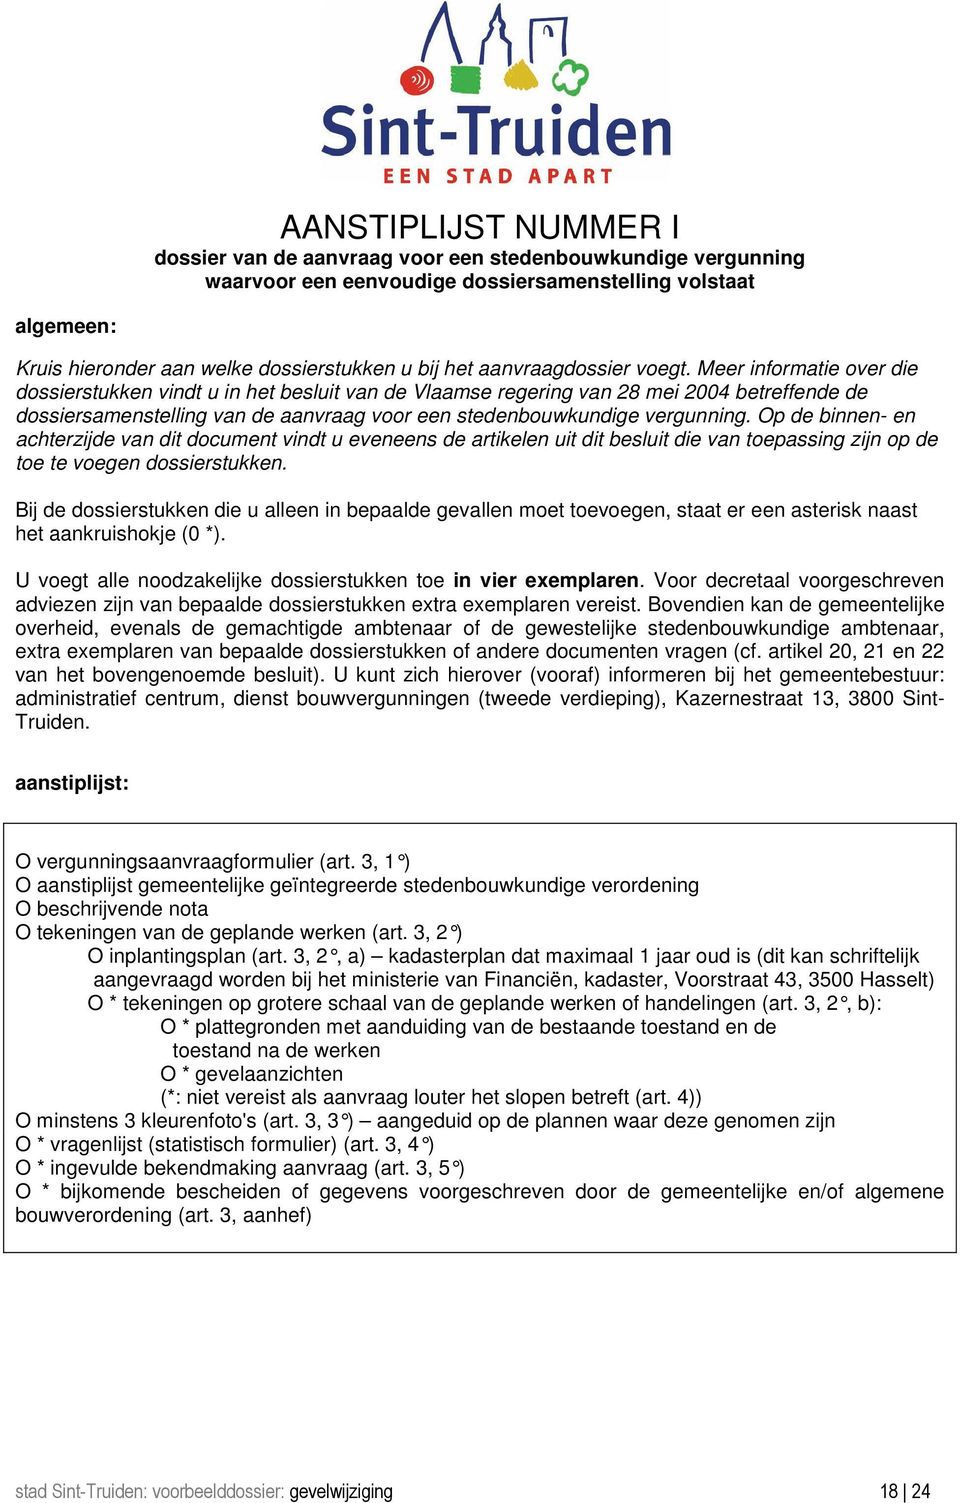 Meer informatie over die dossierstukken vindt u in het besluit van de Vlaamse regering van 28 mei 2004 betreffende de dossiersamenstelling van de aanvraag voor een stedenbouwkundige vergunning.